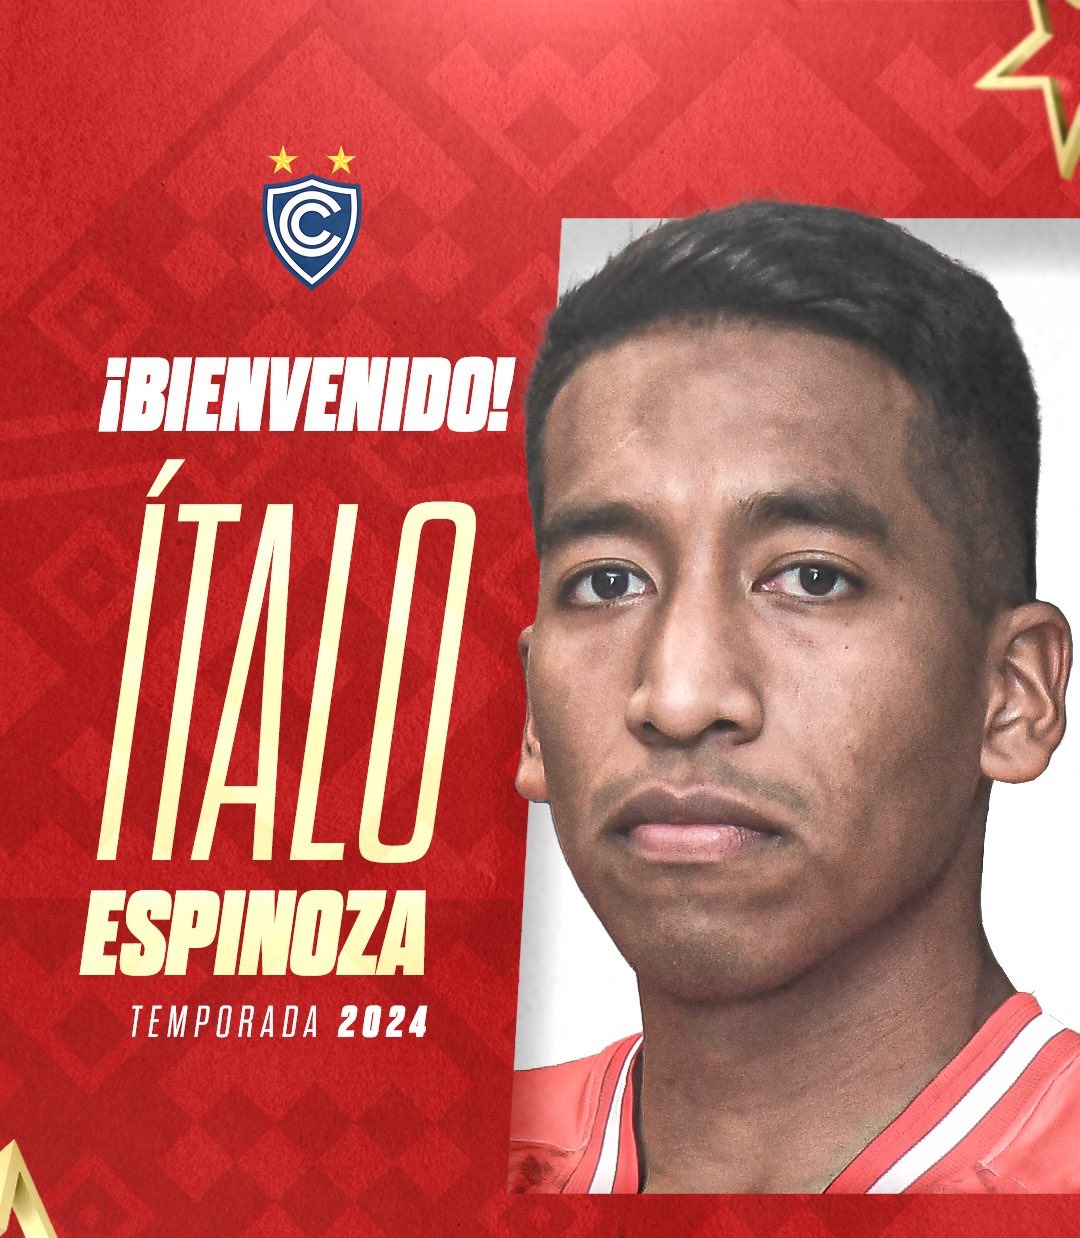 Ítalo Espinoza jugará en Cienciano. | Fuente: @Club_Cienciano